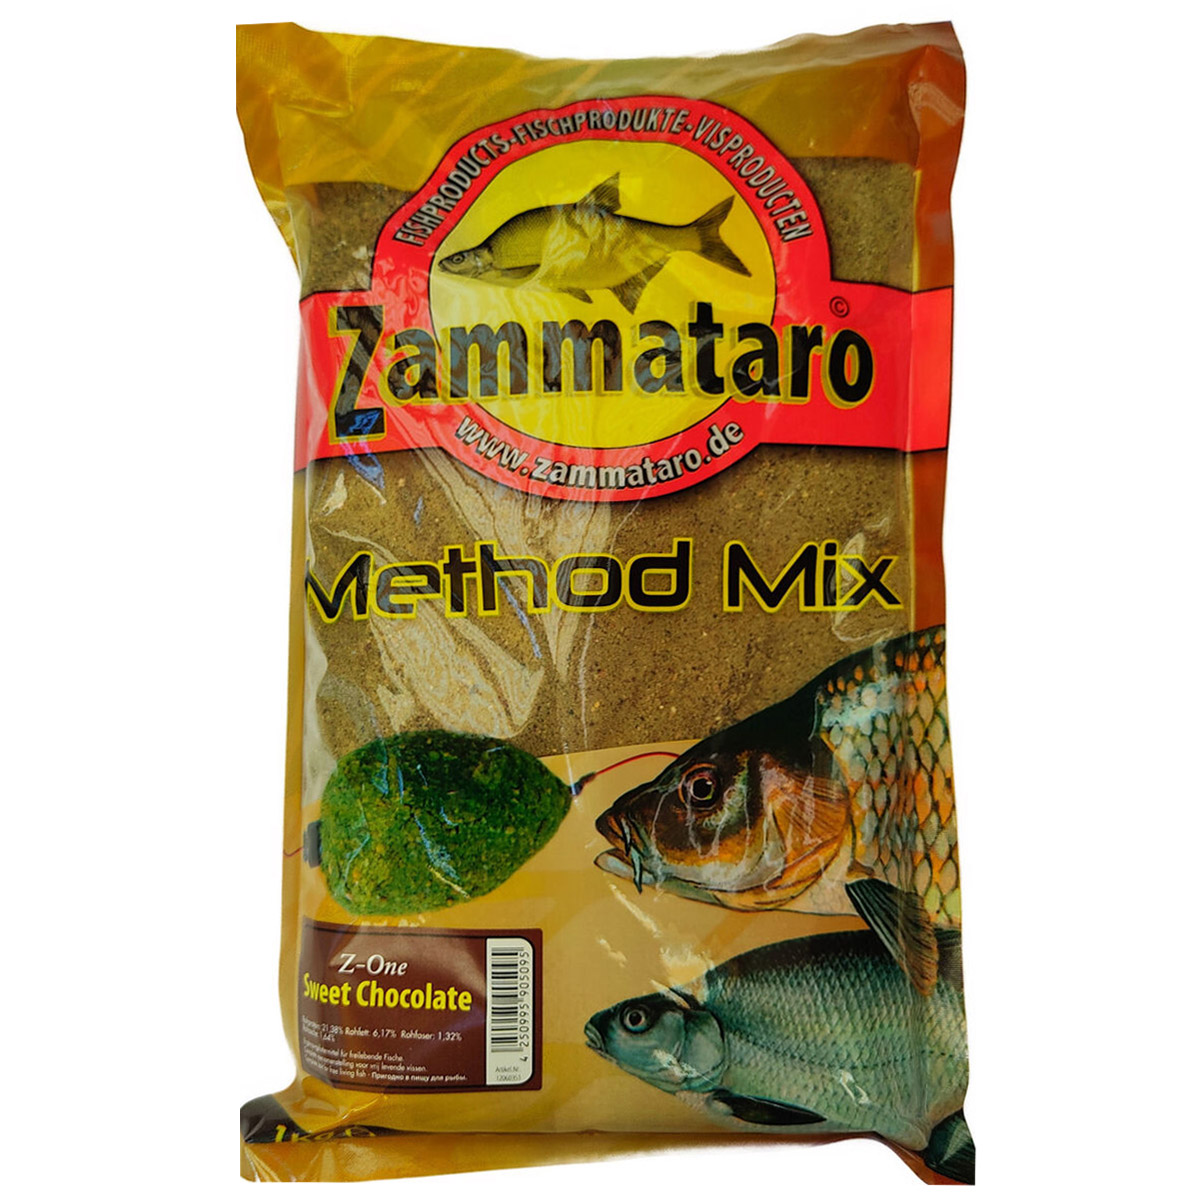 Zammataro Method Mix Z-One Sweet Chocolate